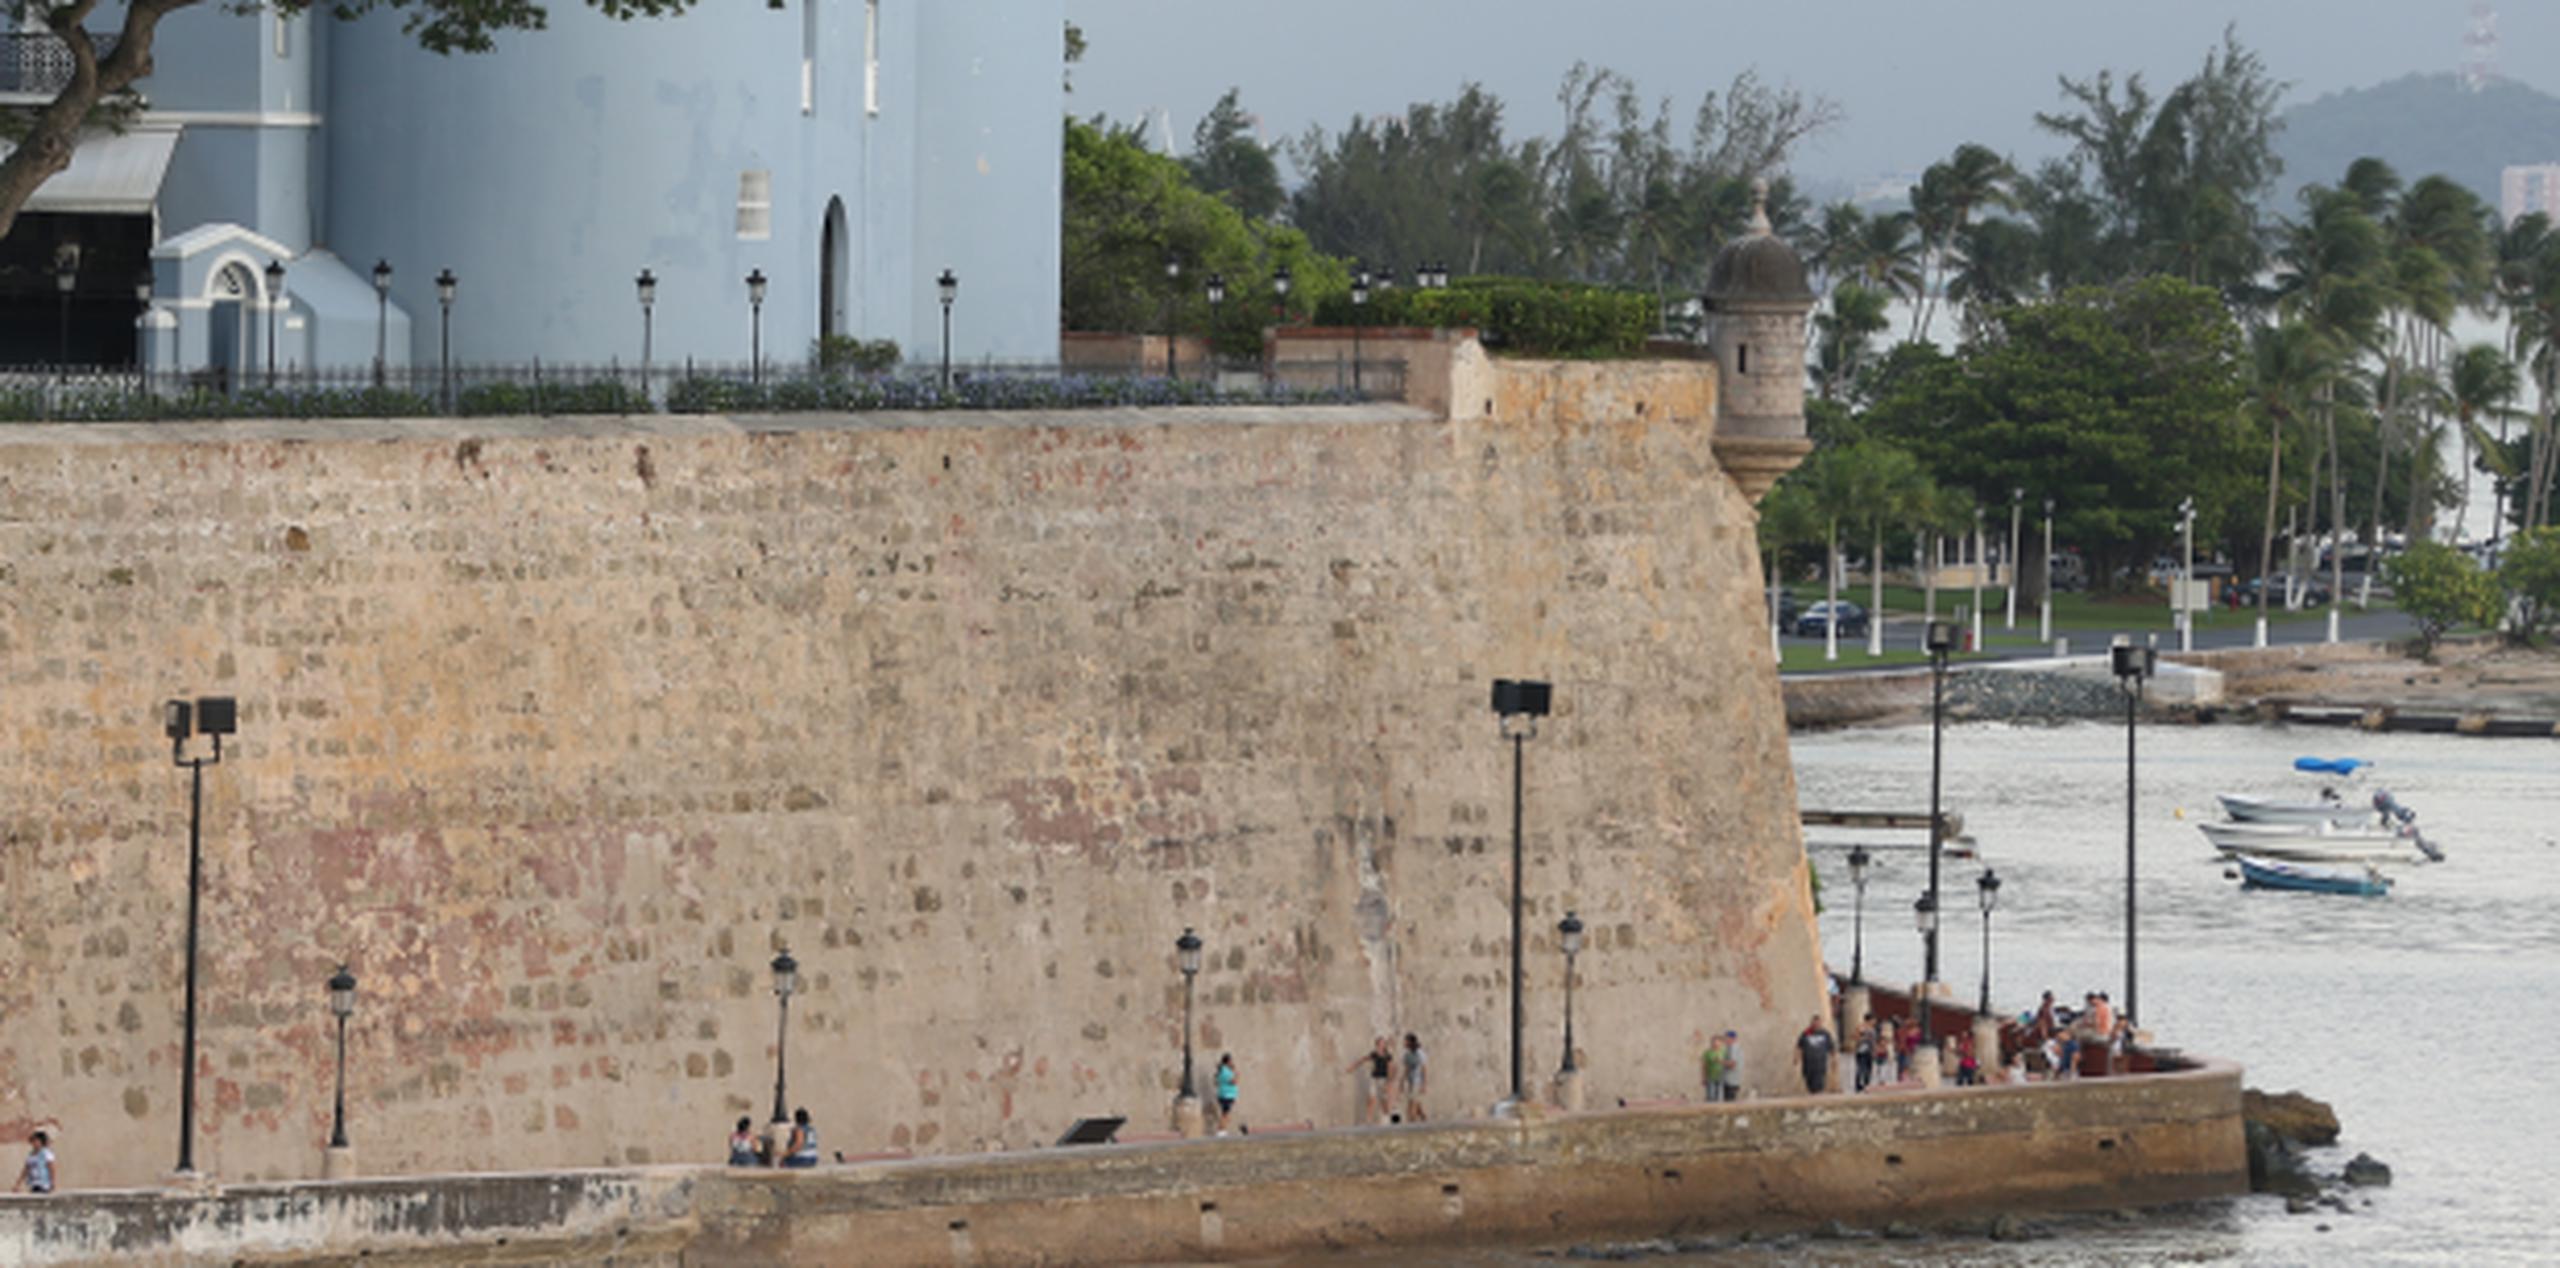 Según explicó la Compañía de Turismo, la ruta incluye un recorrido caminando en el interior de las murallas del Viejo San Juan, declaradas como Patrimonio de la Humanidad de la UNESCO. (Archivo)